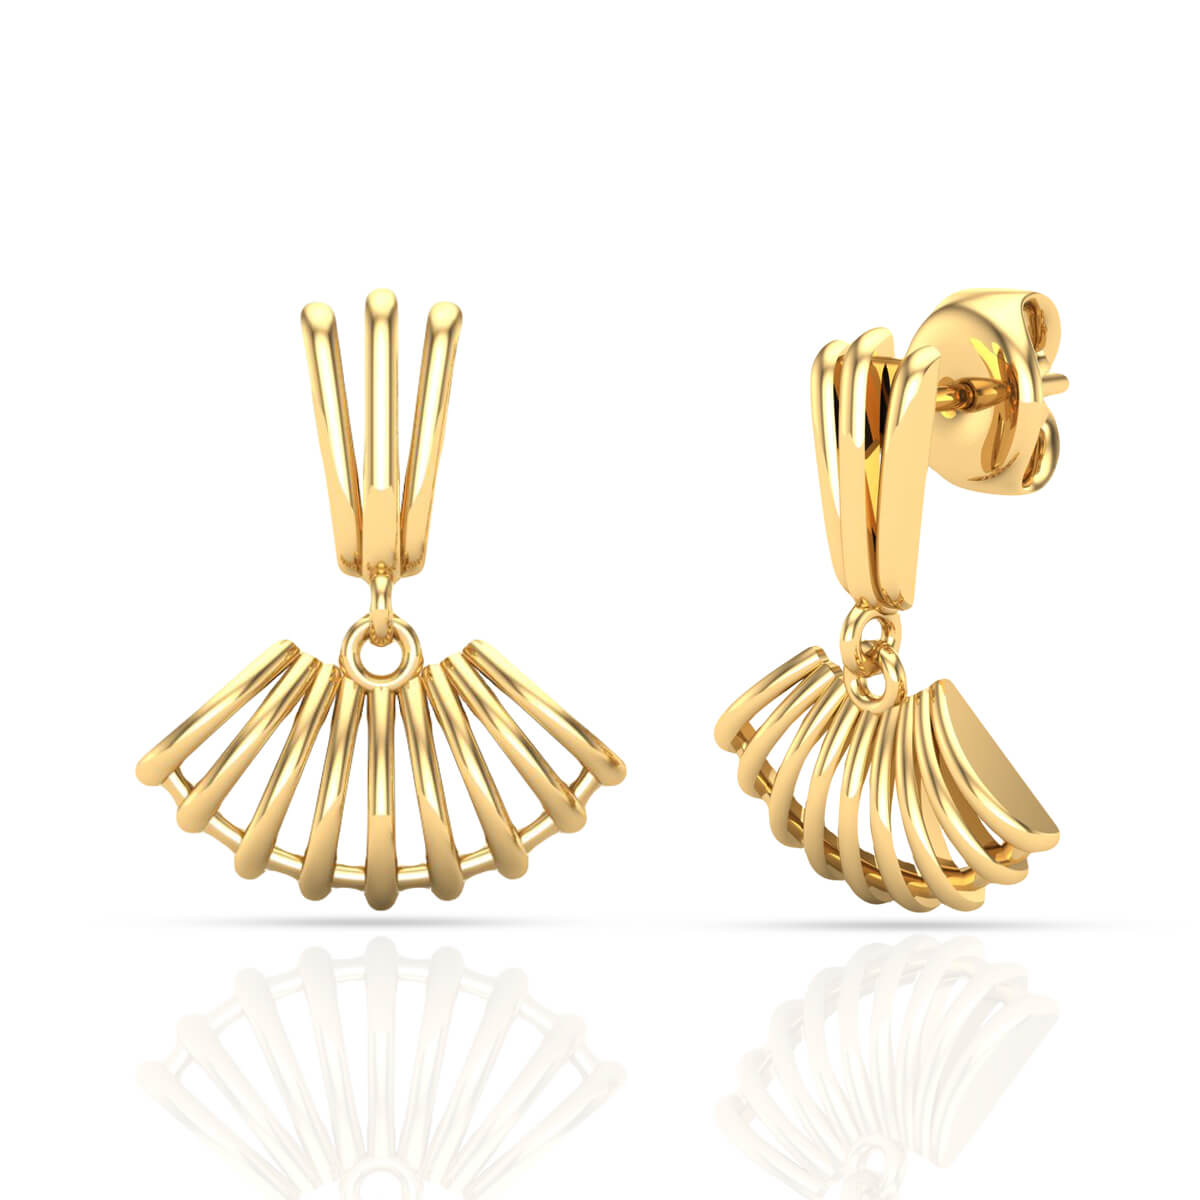 simple gold earrings design / latest earring design - YouTube